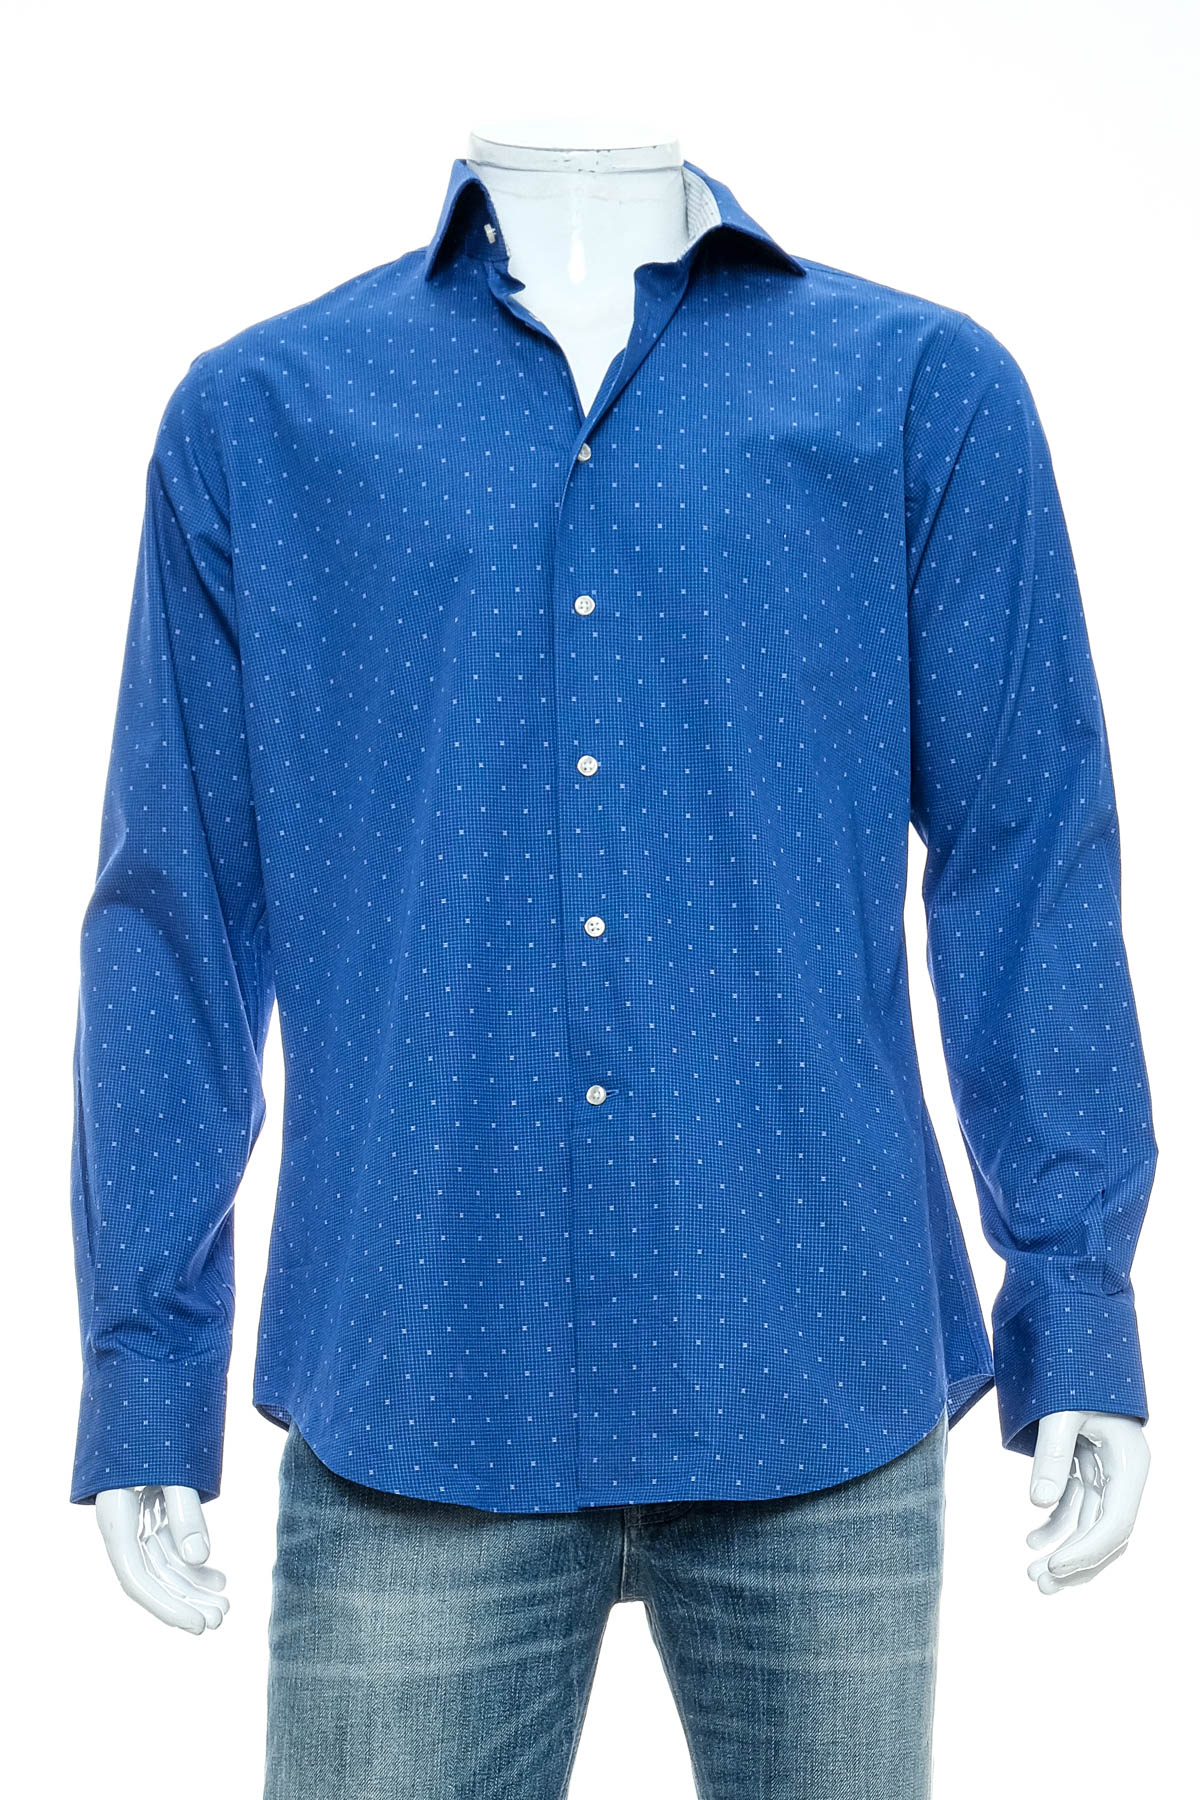 Ανδρικό πουκάμισο - The BLUEPRINT Premium - 0